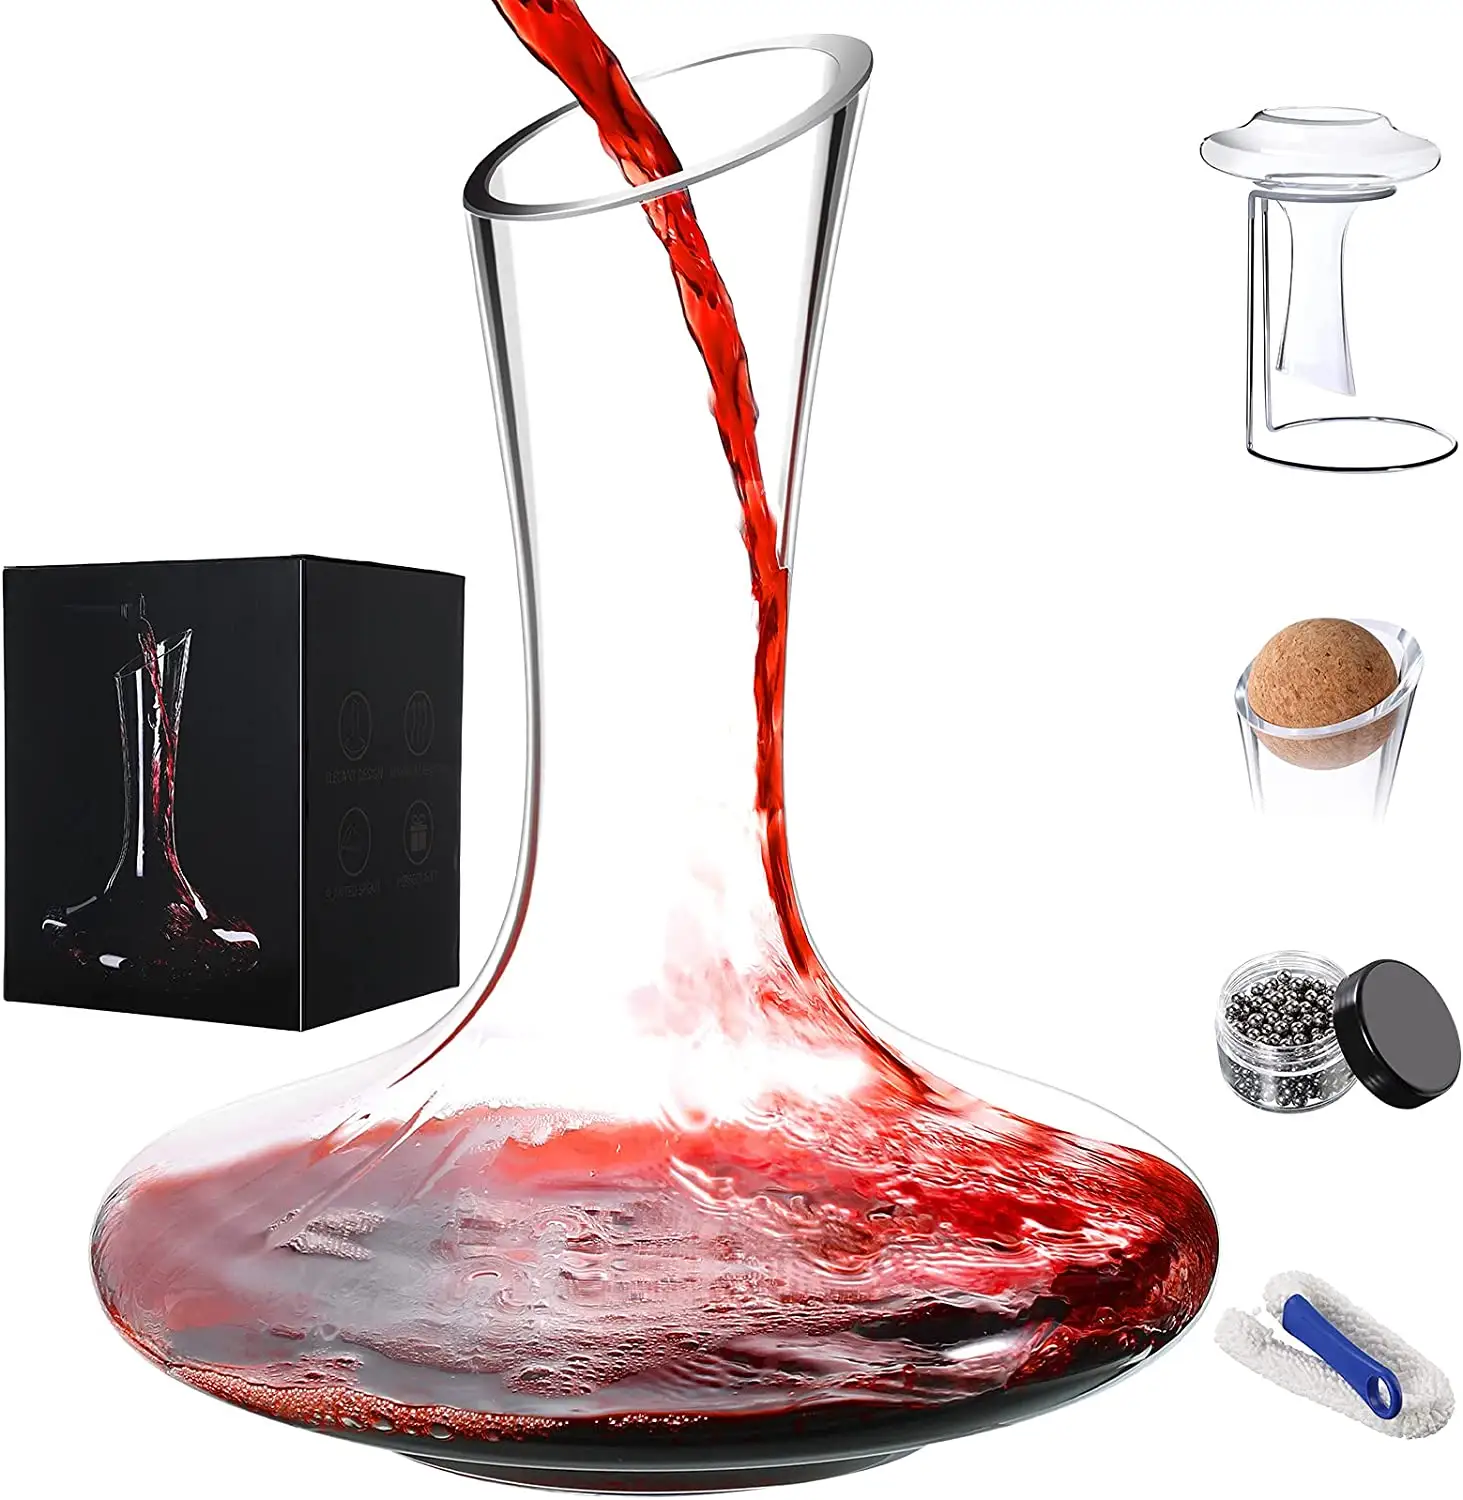 ワインデカンター60オンスアクセサリー付き手吹きクリスタルガラスワインカラフ乾燥スタンド、コルクストッパーを含むワイン愛好家のための